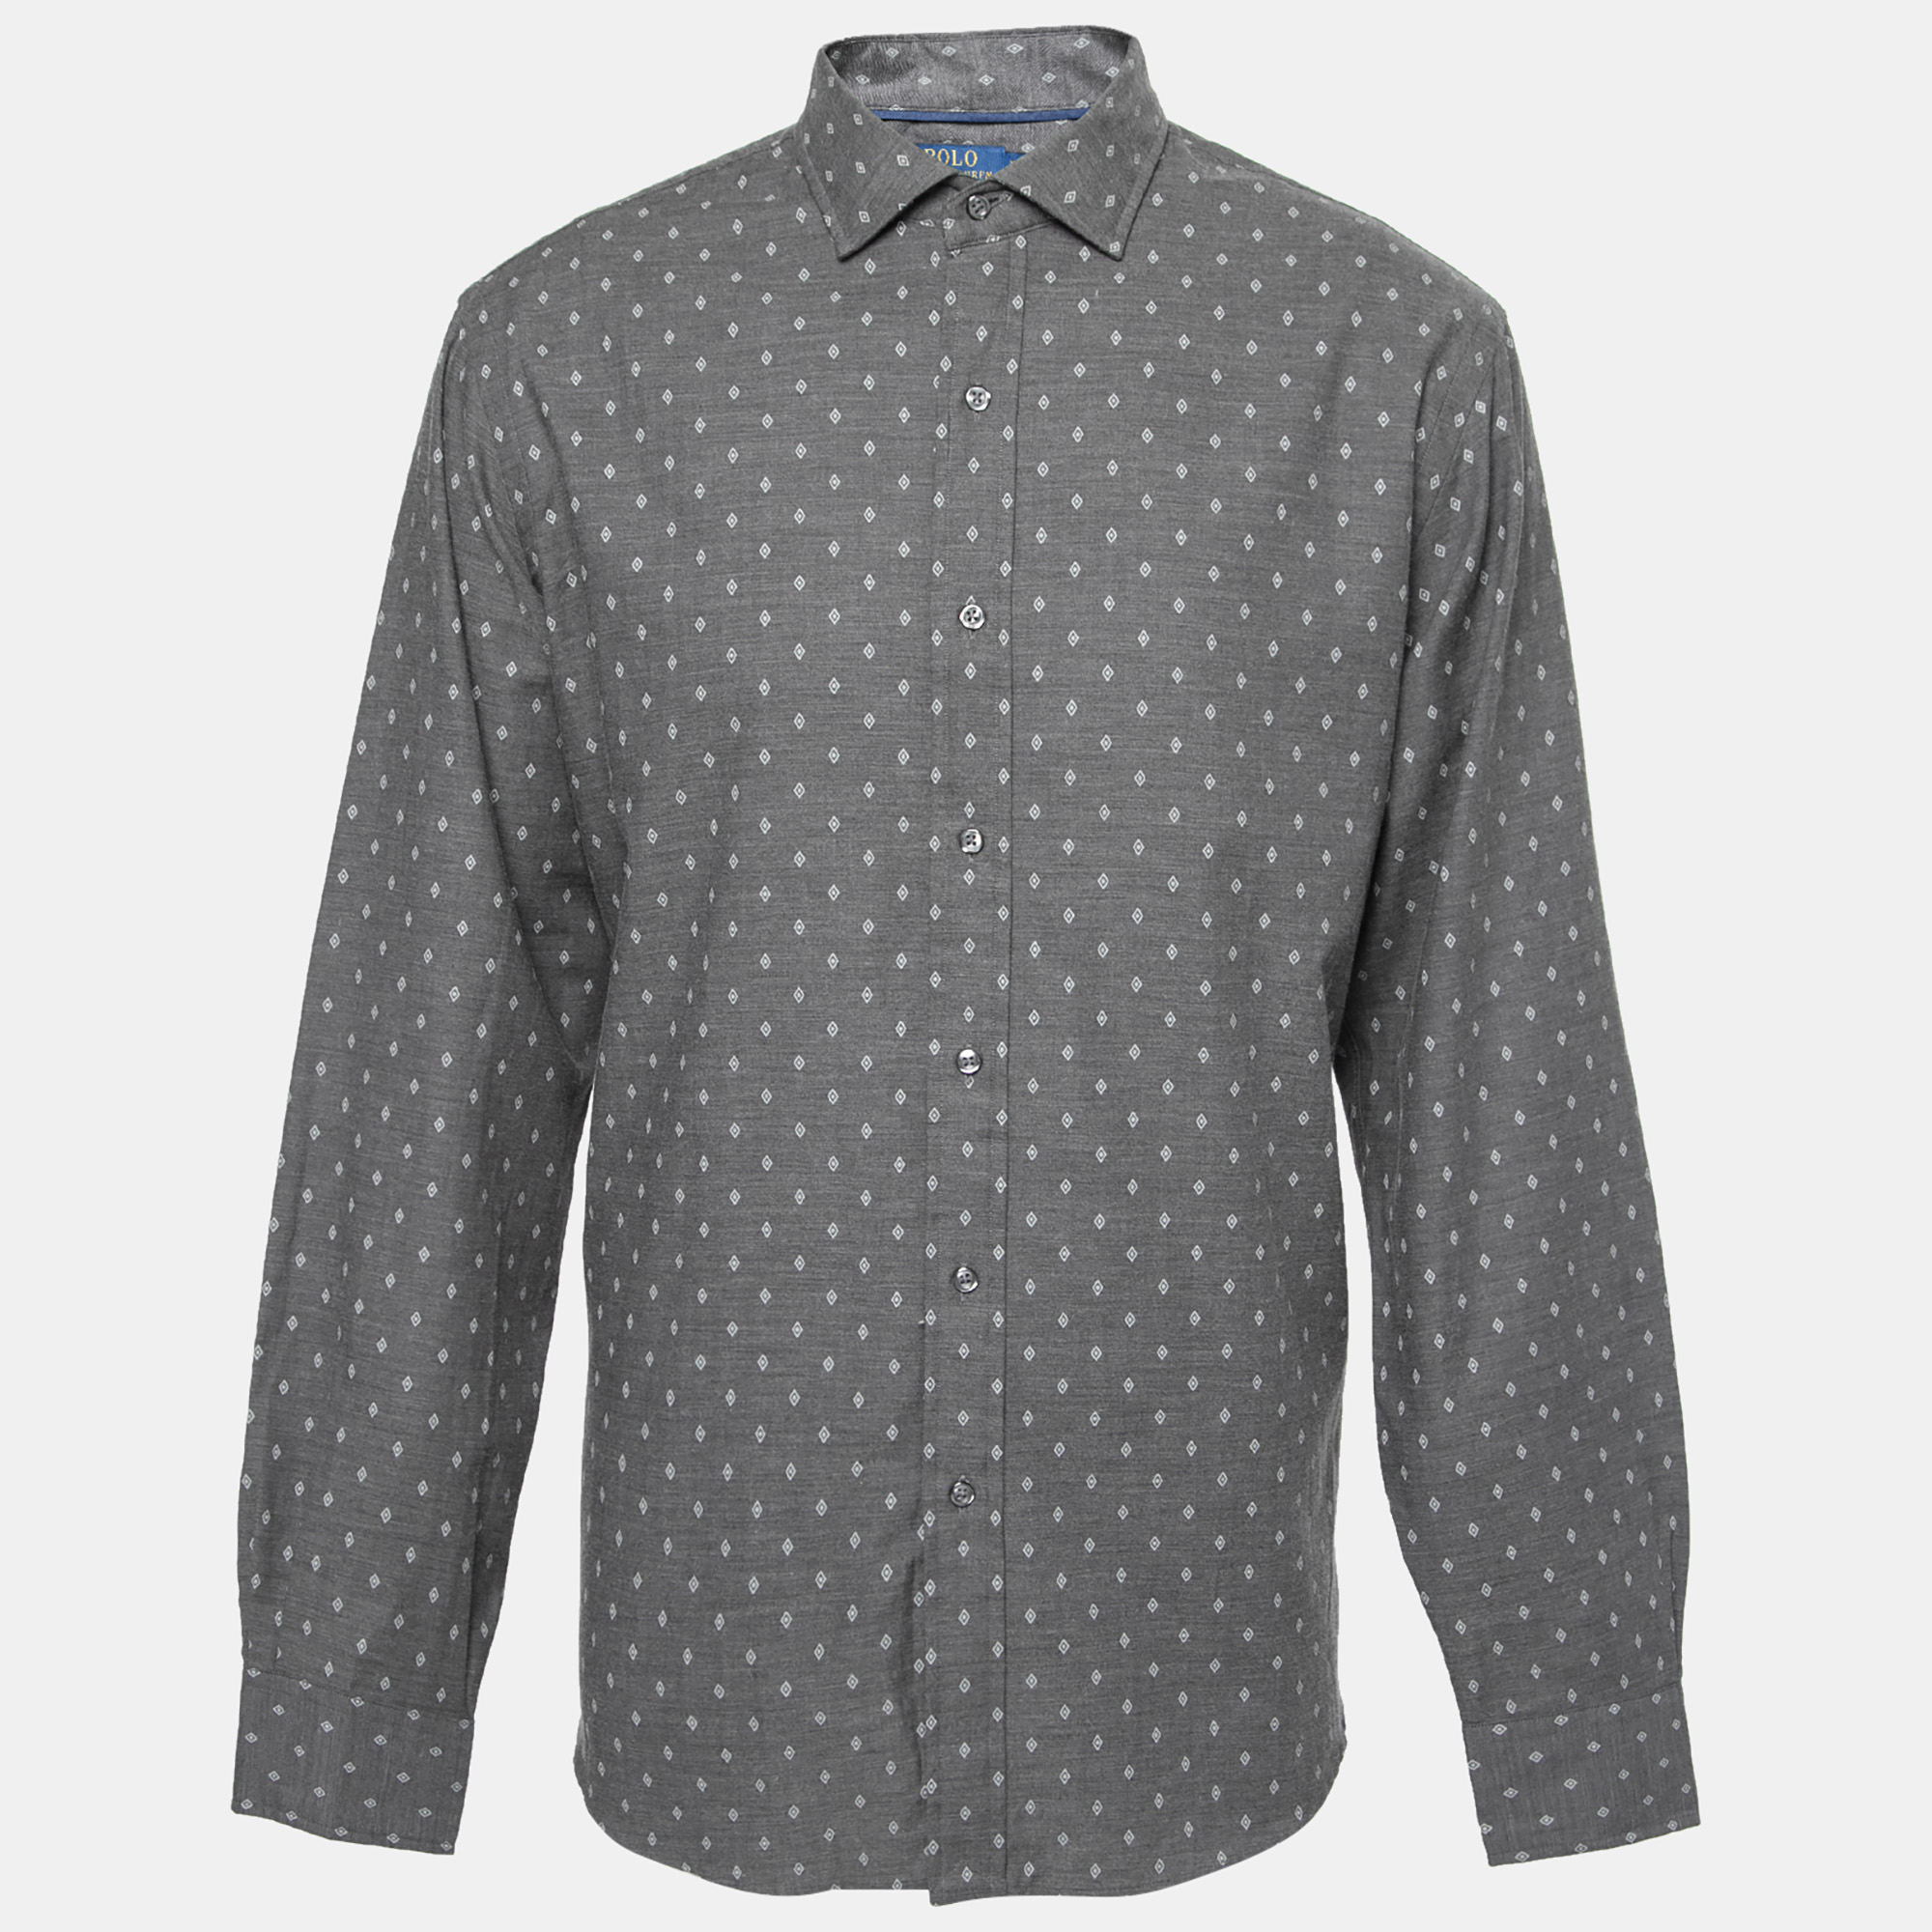 Polo Ralph Lauren Grey Cotton Long Sleeve Button Front Shirt XL